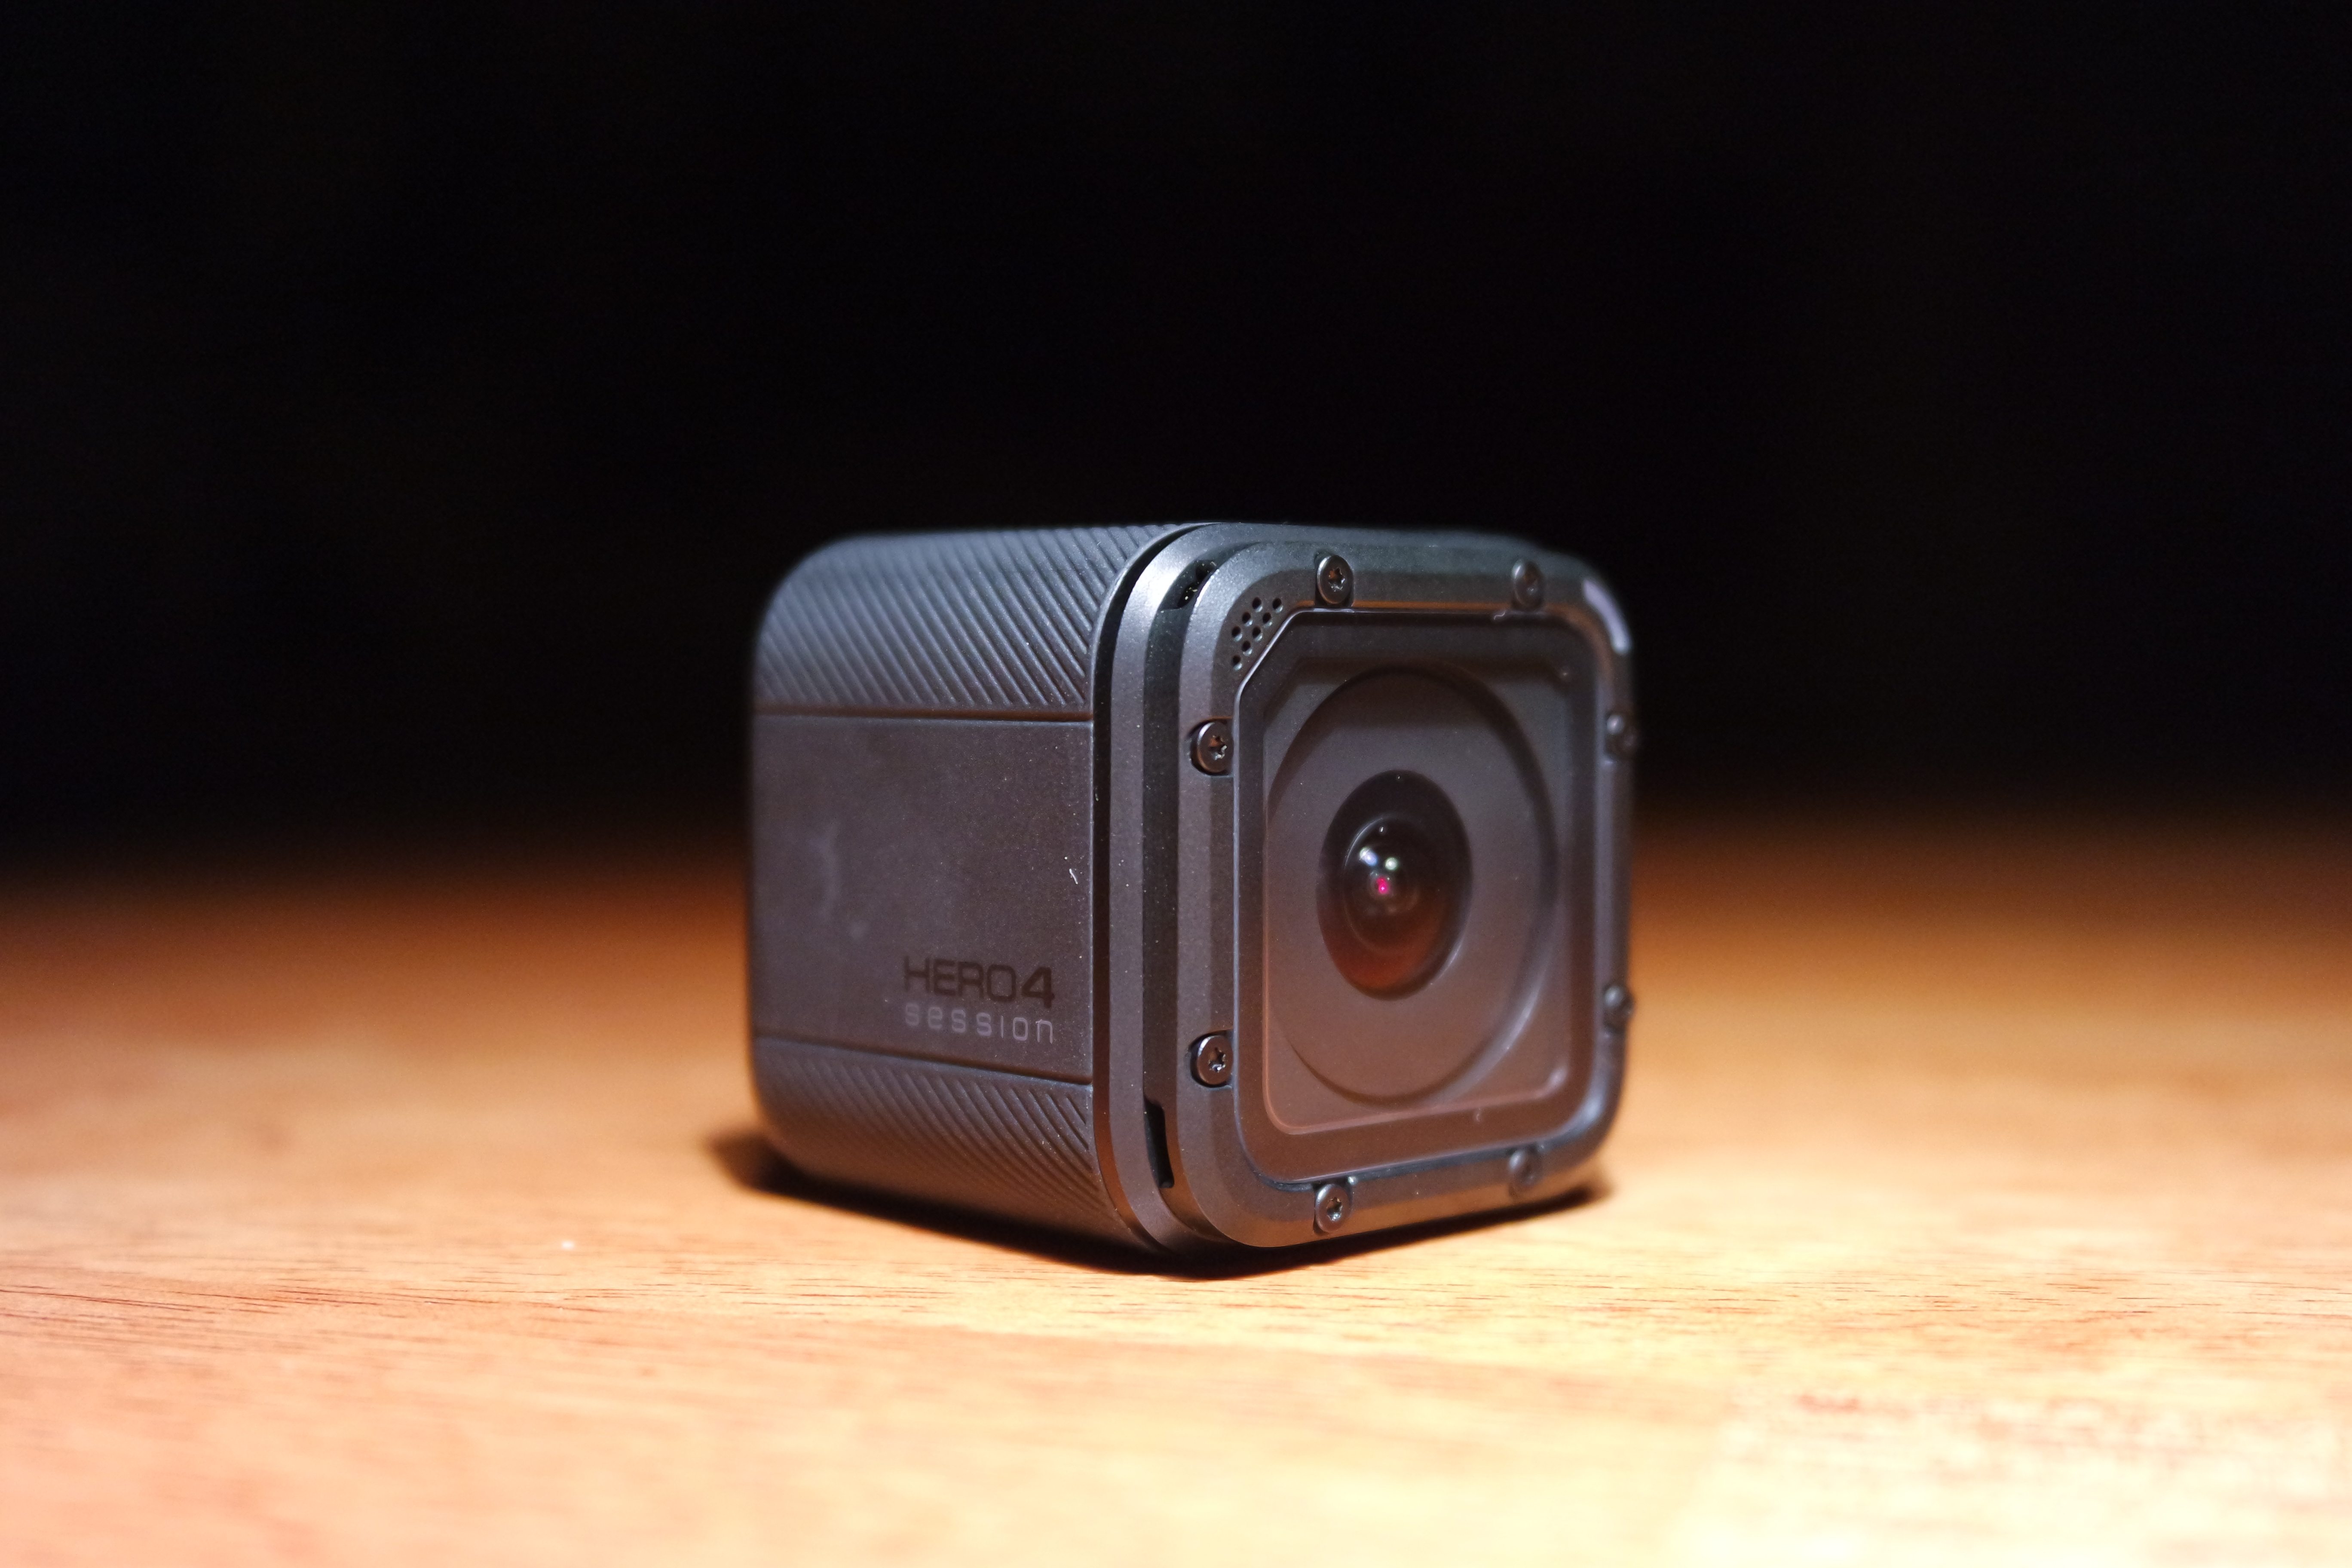 La Hero 4 Session es la cámara más pequeña de la línea GoPro, y su precio ha sido rebajado en dos ocasiones.